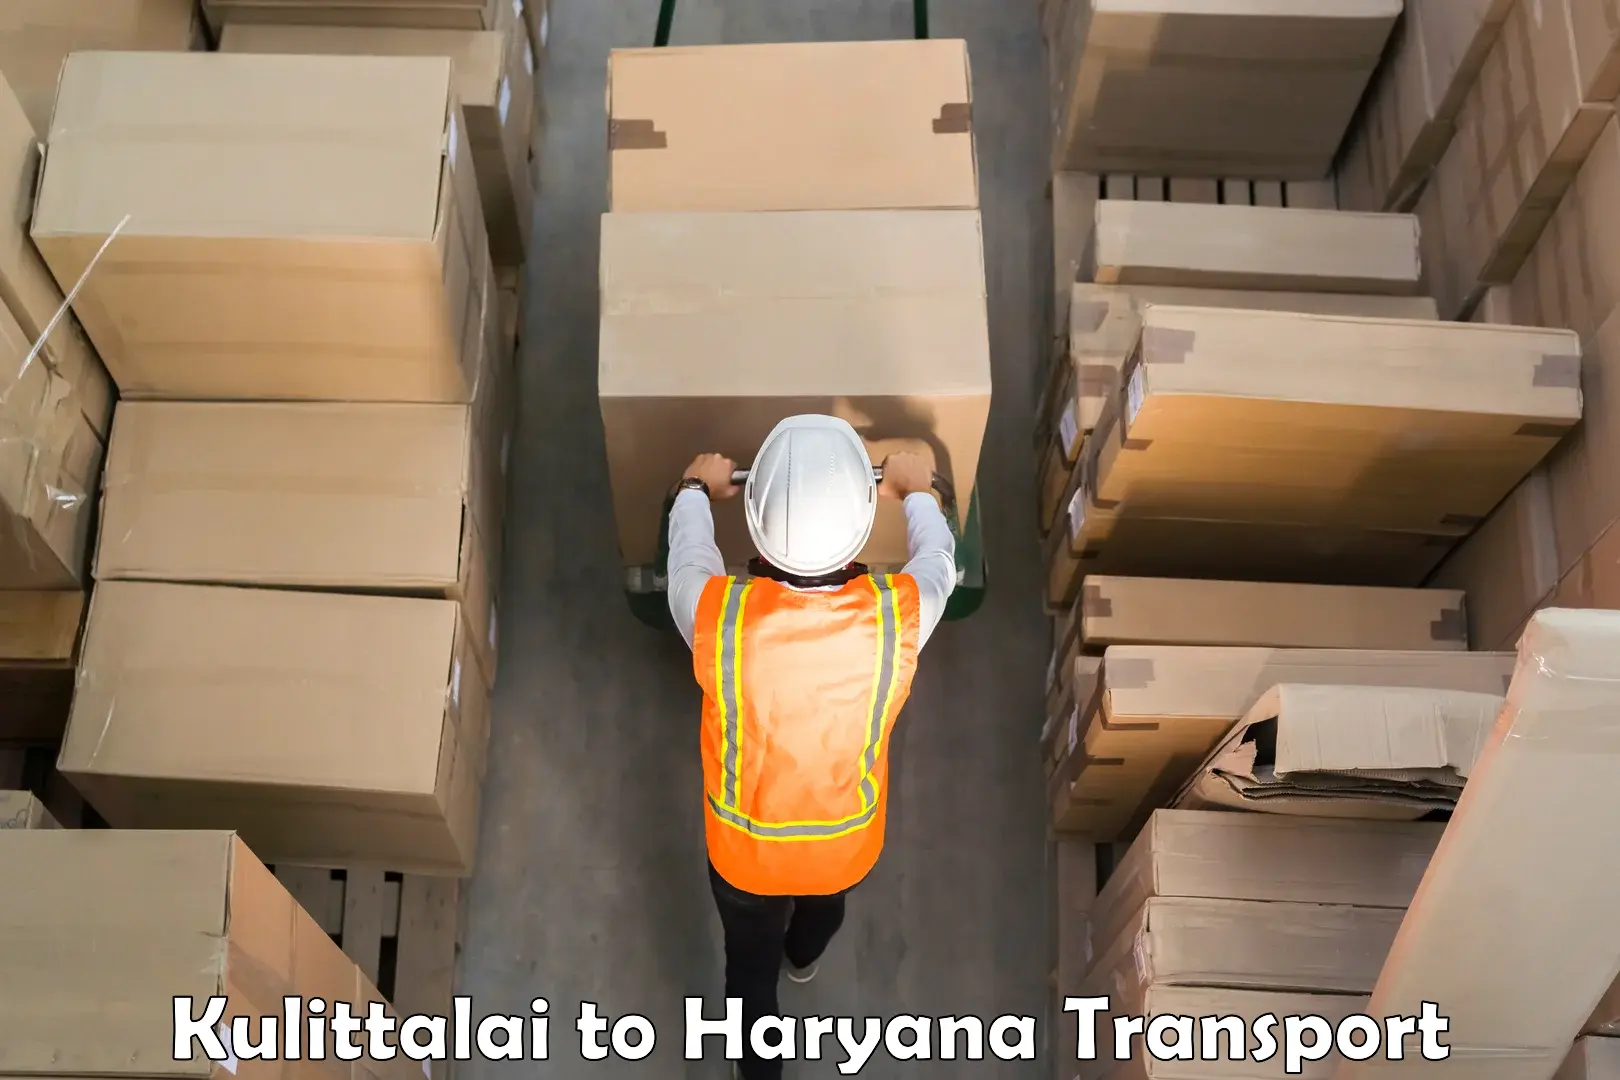 Furniture transport service Kulittalai to Haryana